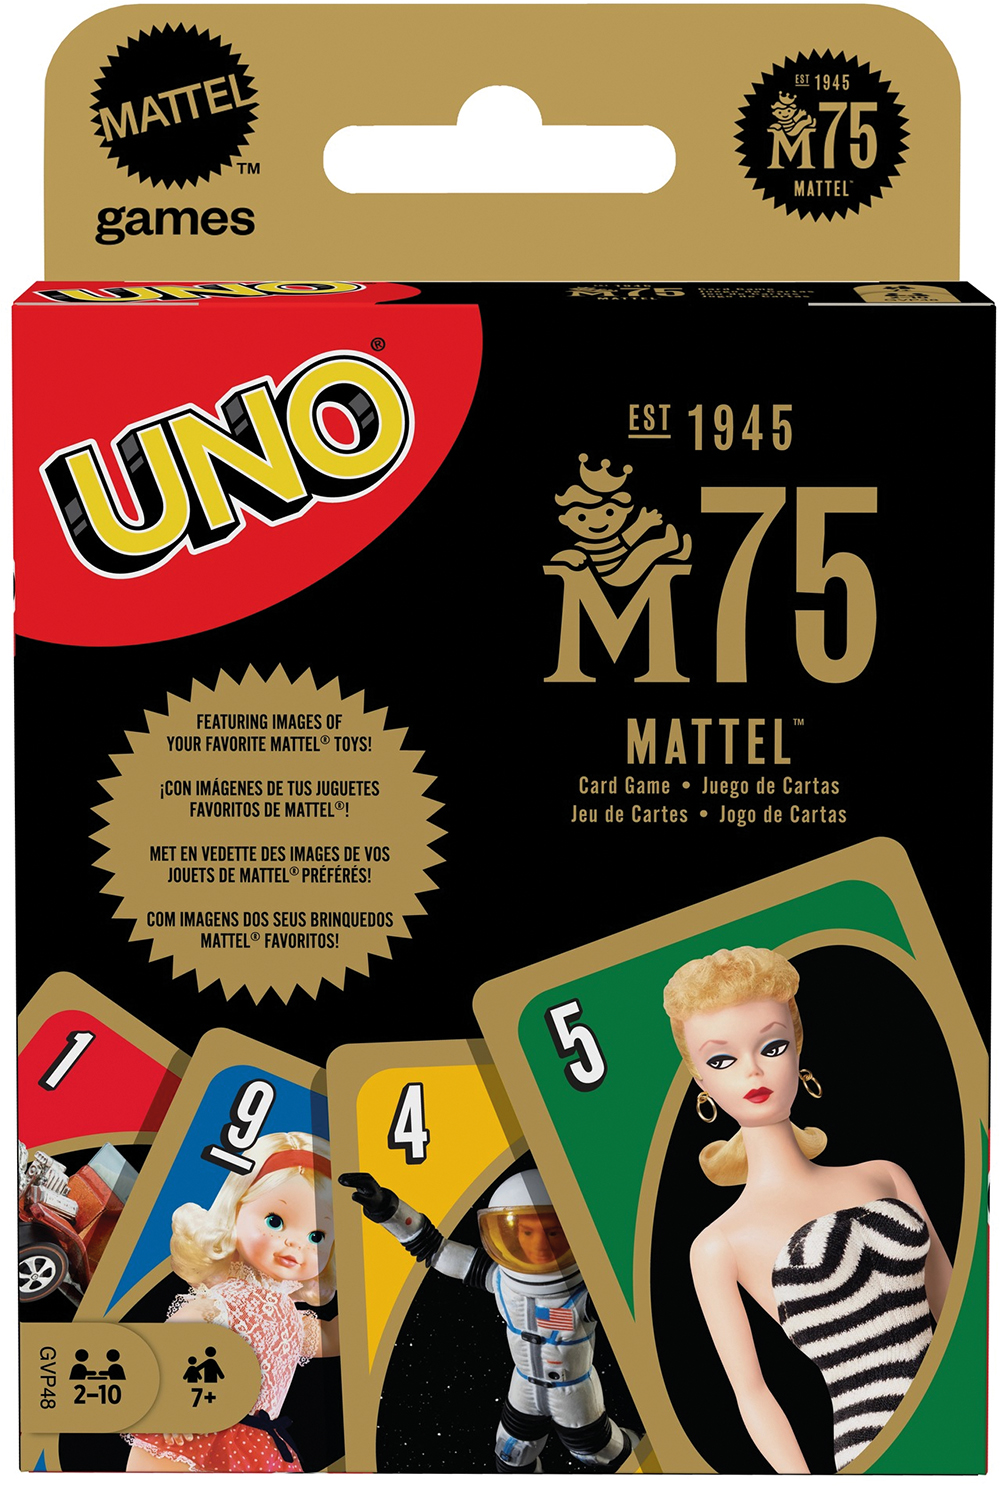 Uno - Mario Kart - LilloJEUX - Boutique québécoise